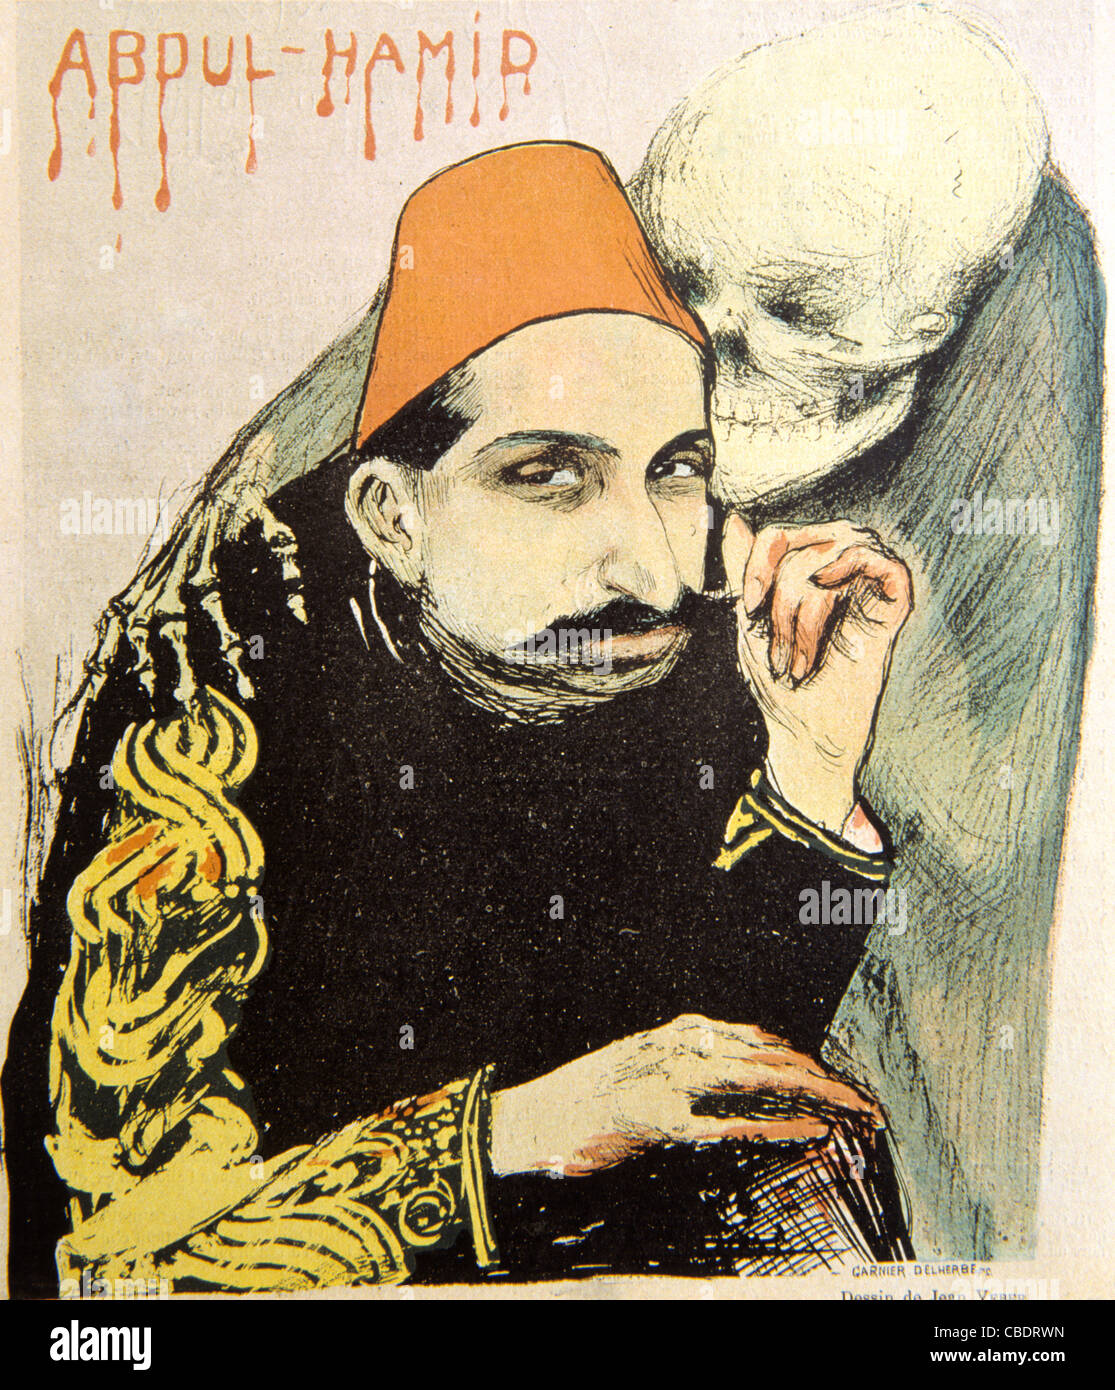 Il sultano Abdul Hamid II, sultano ottomano della Turchia come uomo malato d'Europa. Copertina del giornale satirico francese rivista, "Le Rire", Maggio 1897 Foto Stock